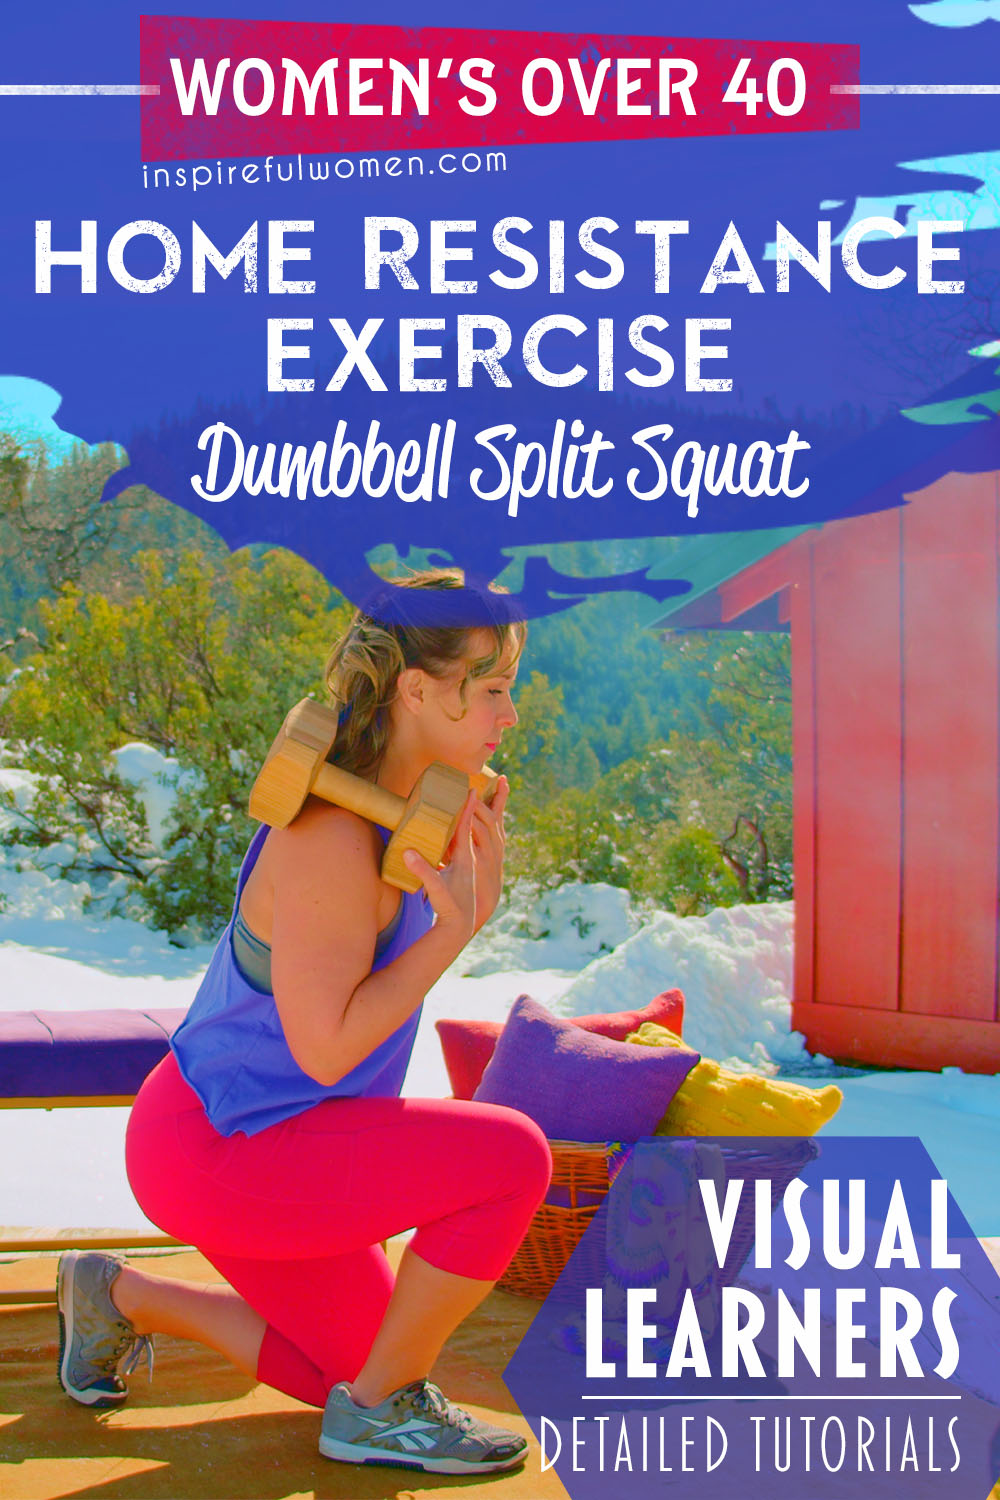 dumbbell-split-squat-quadriceps-glutes-lower-body-exercise-women-over-40